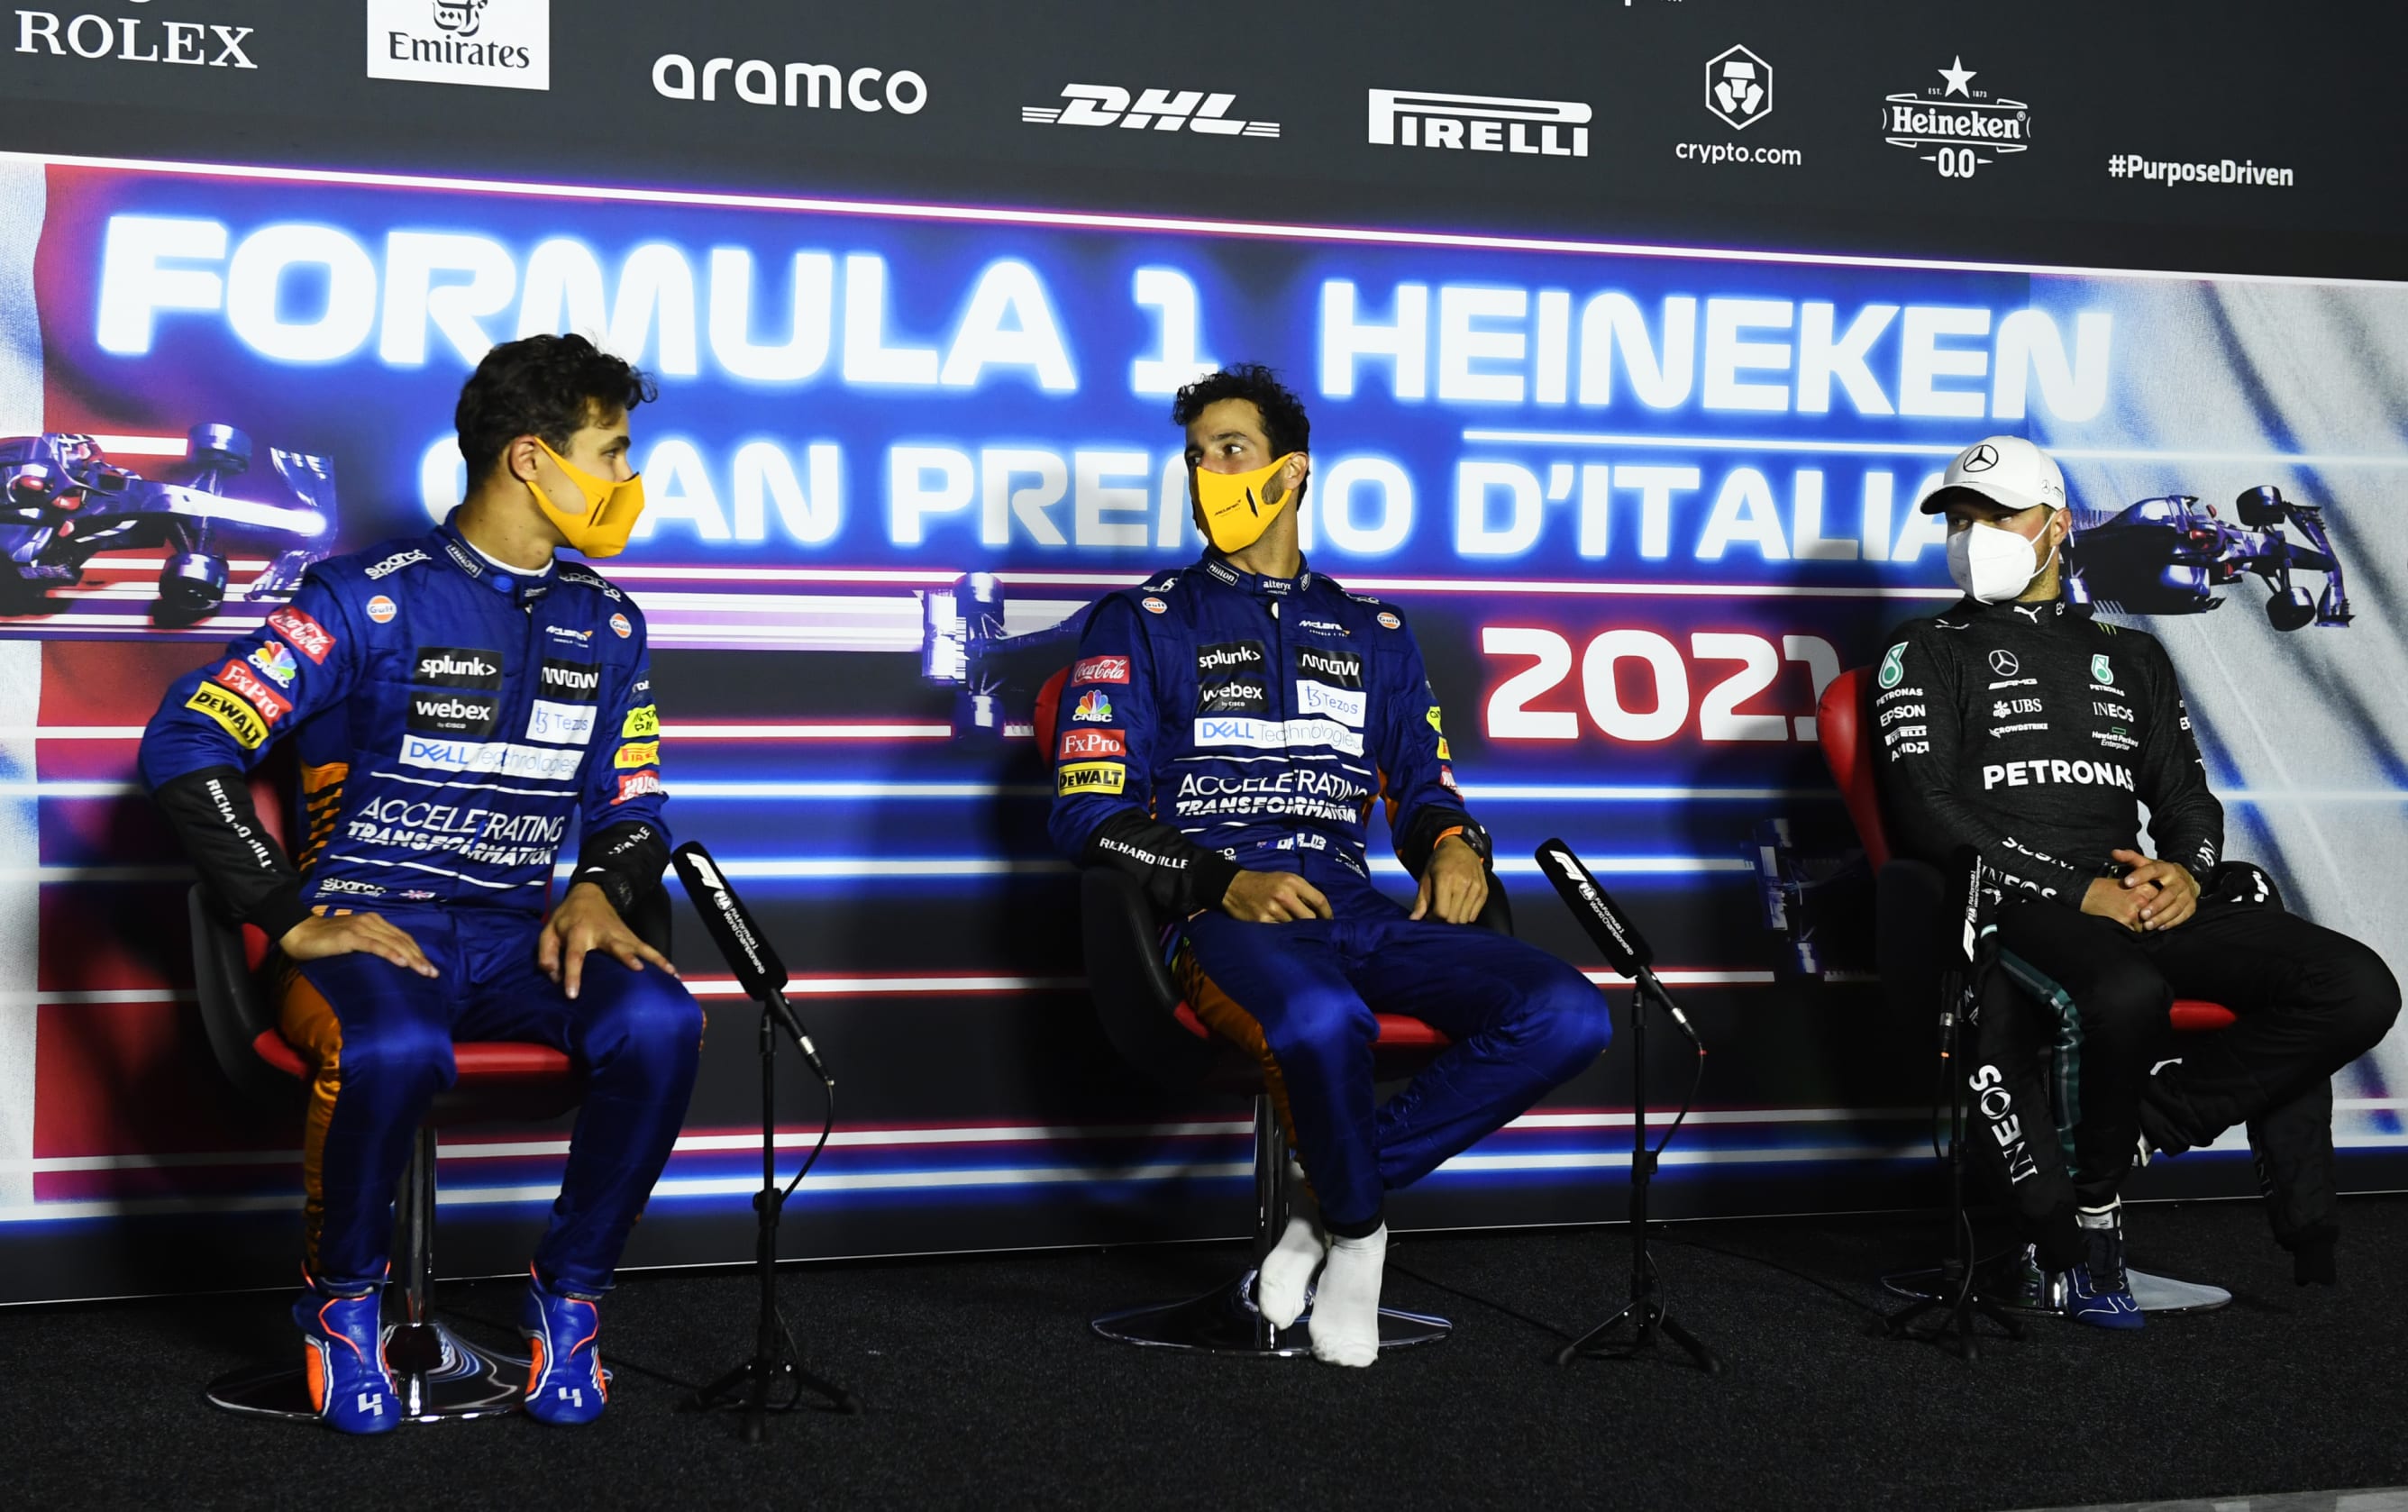 FIA postrace press conference Italy Formula 1®